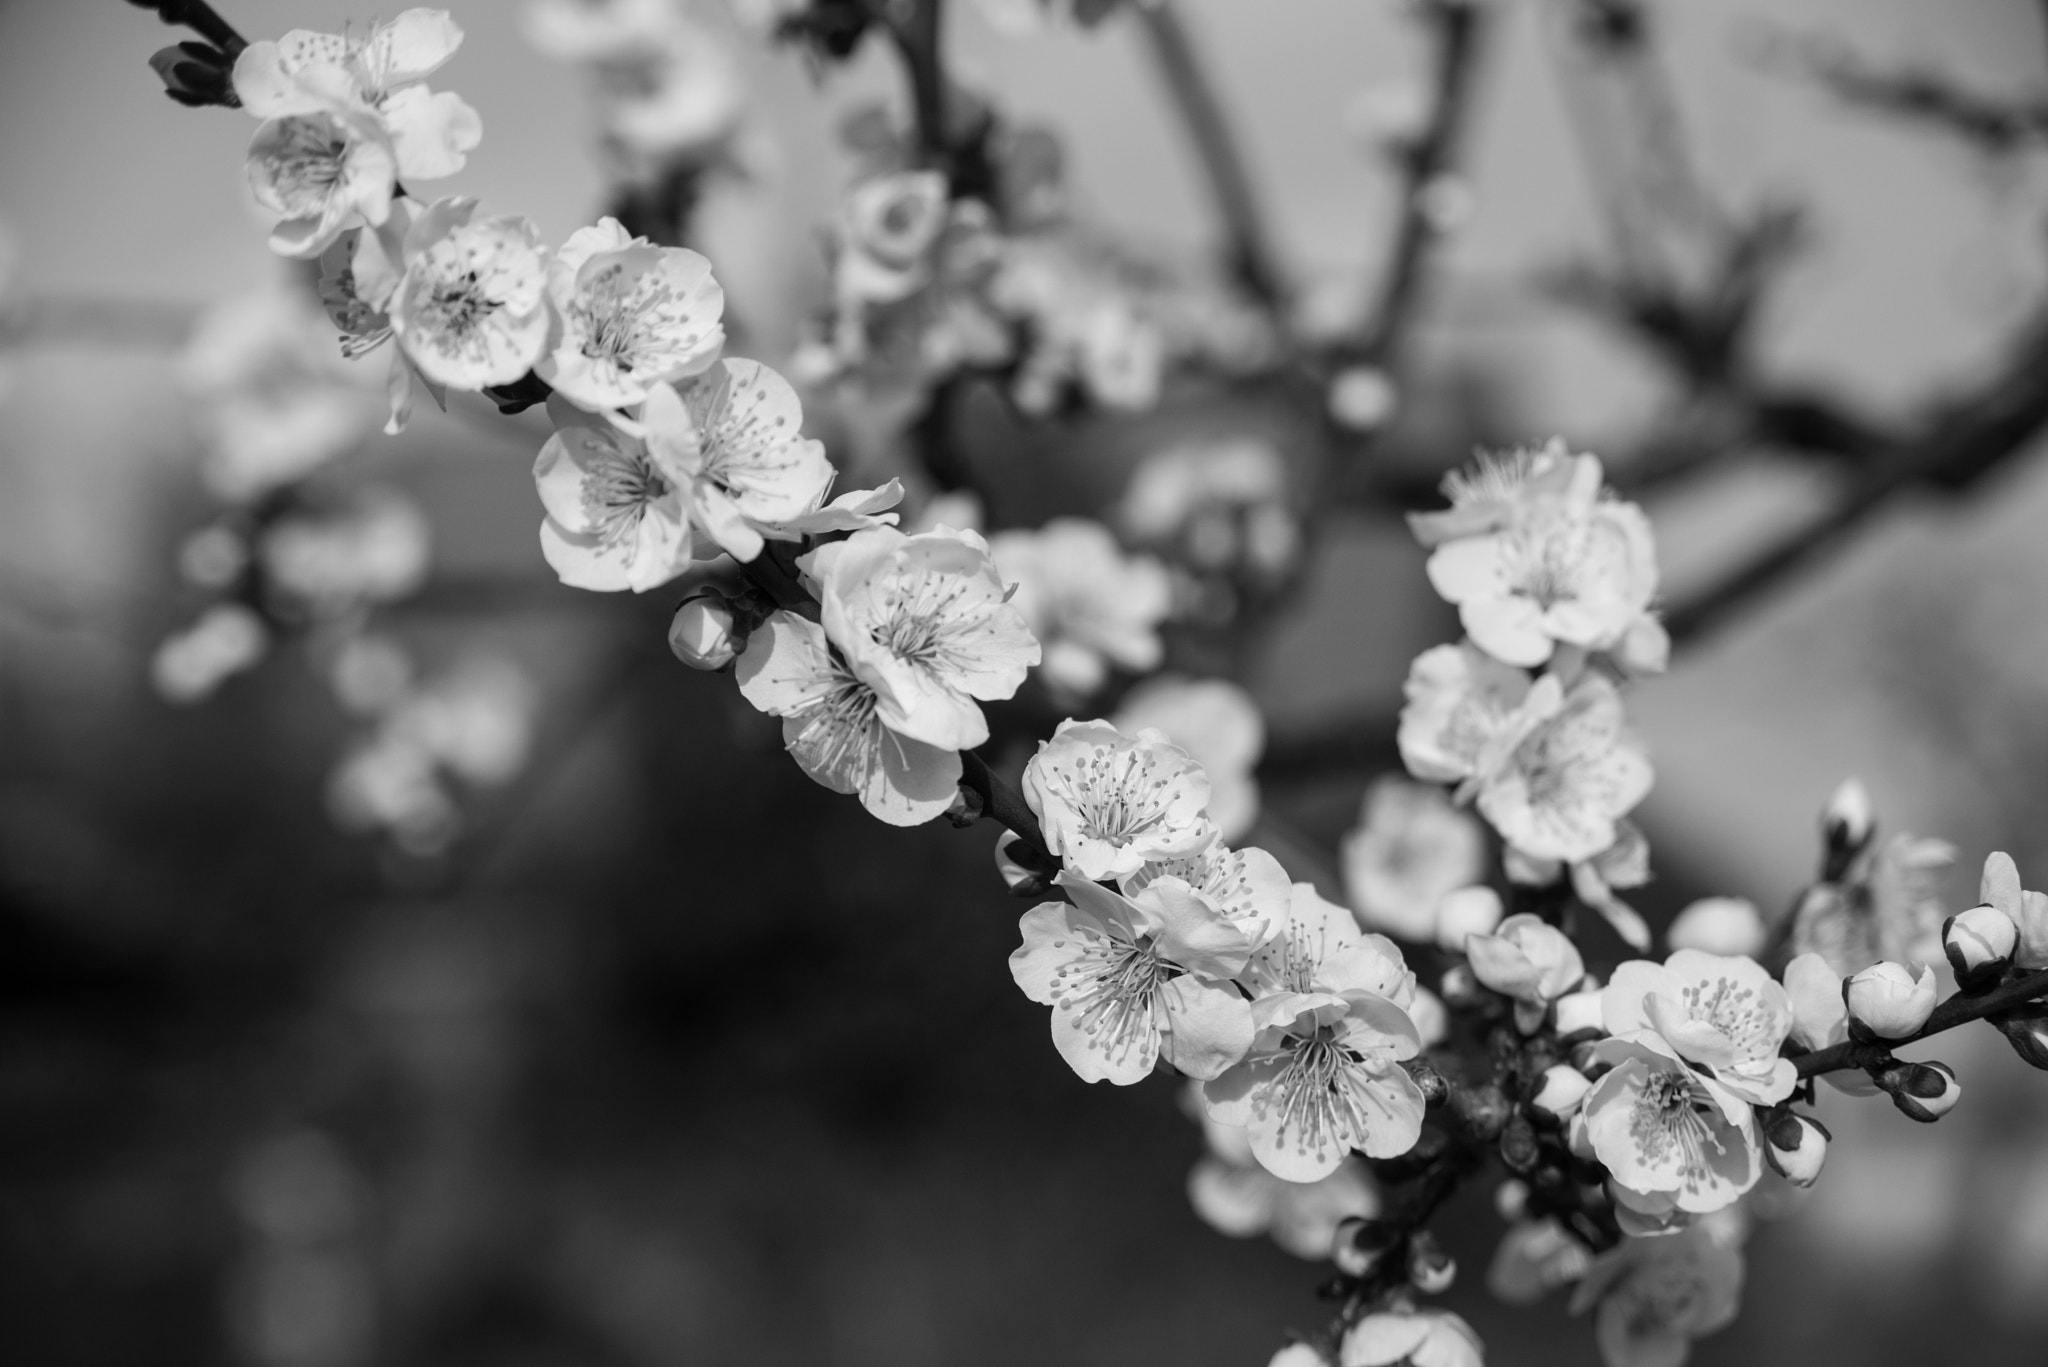 Nikon D810 + AF Zoom-Nikkor 28-105mm f/3.5-4.5D IF sample photo. Ume blossoms photography